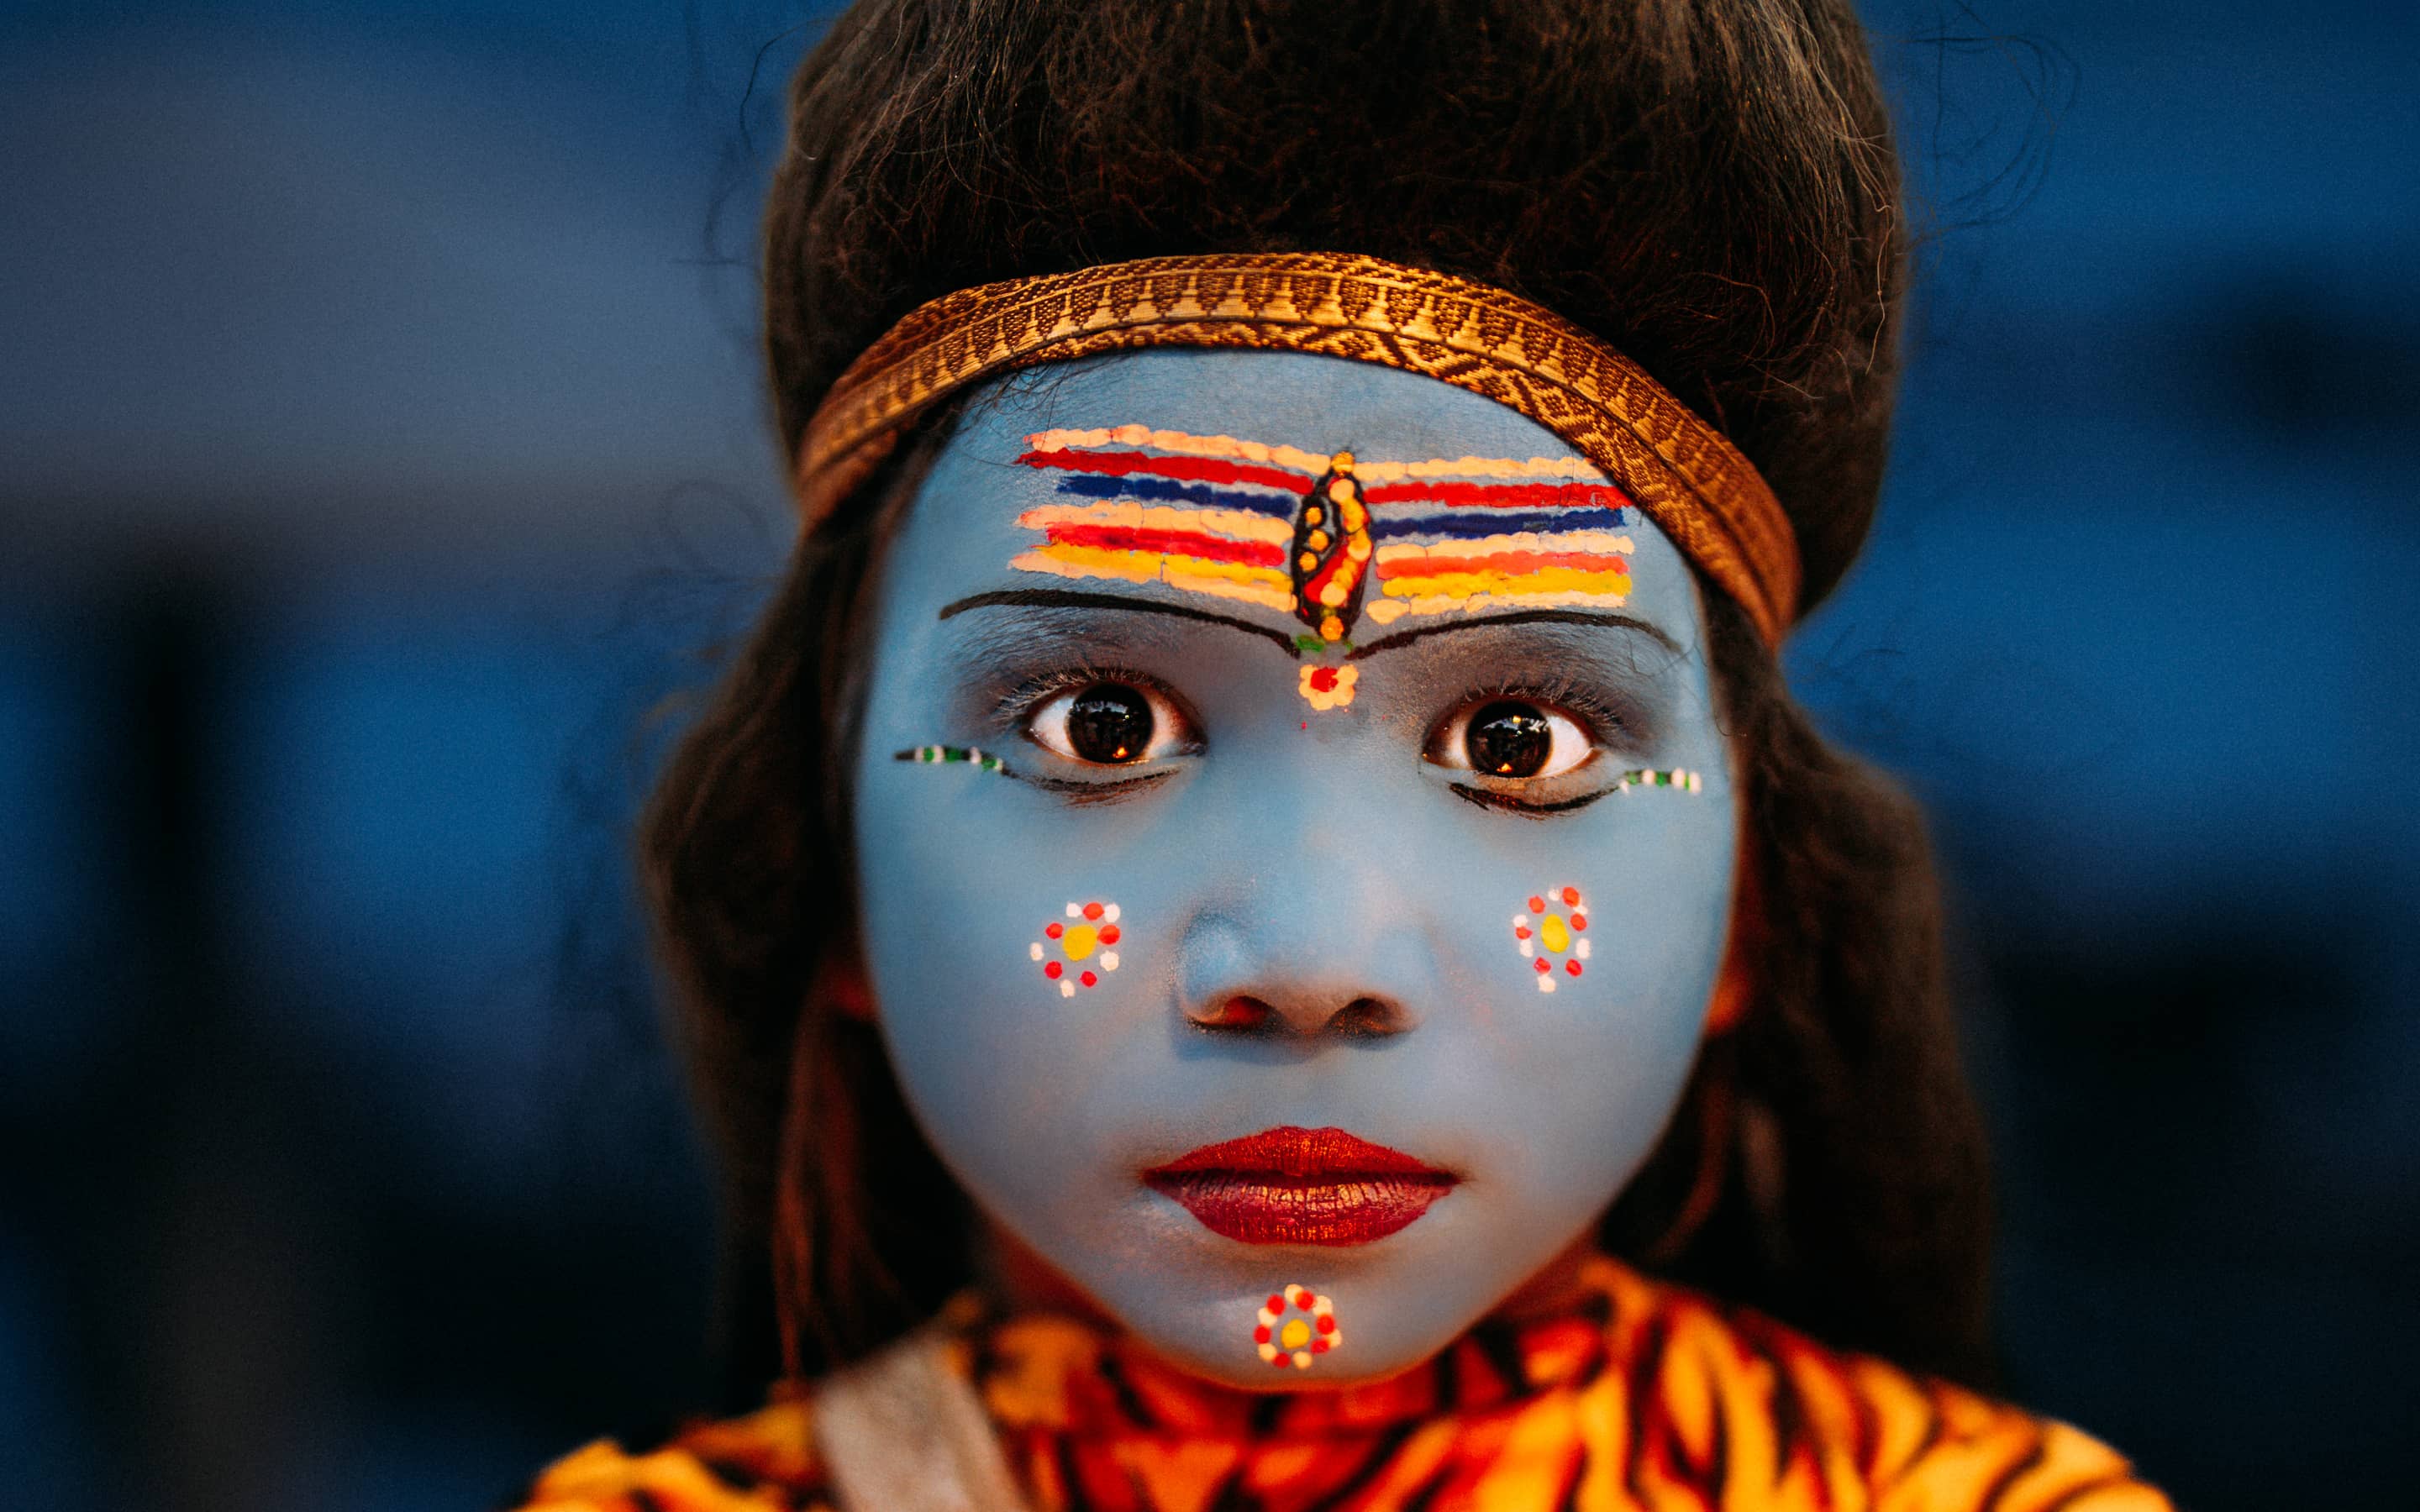 Begegnung unterwegs: ein Mädchen, das den Hindu-Gott Shiva darstellen soll.